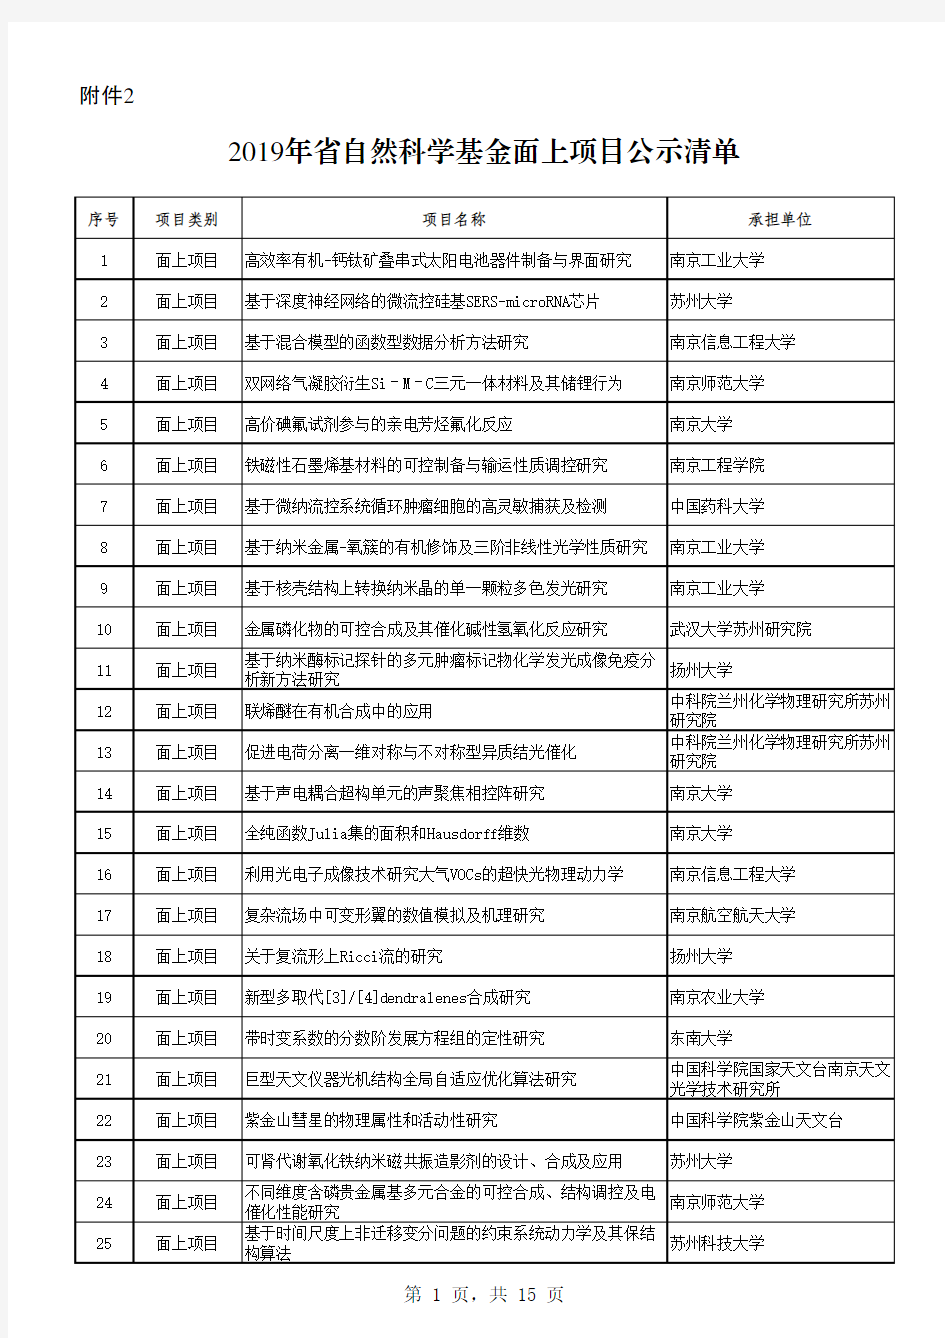 2019年江苏省自然科学基金面上项目